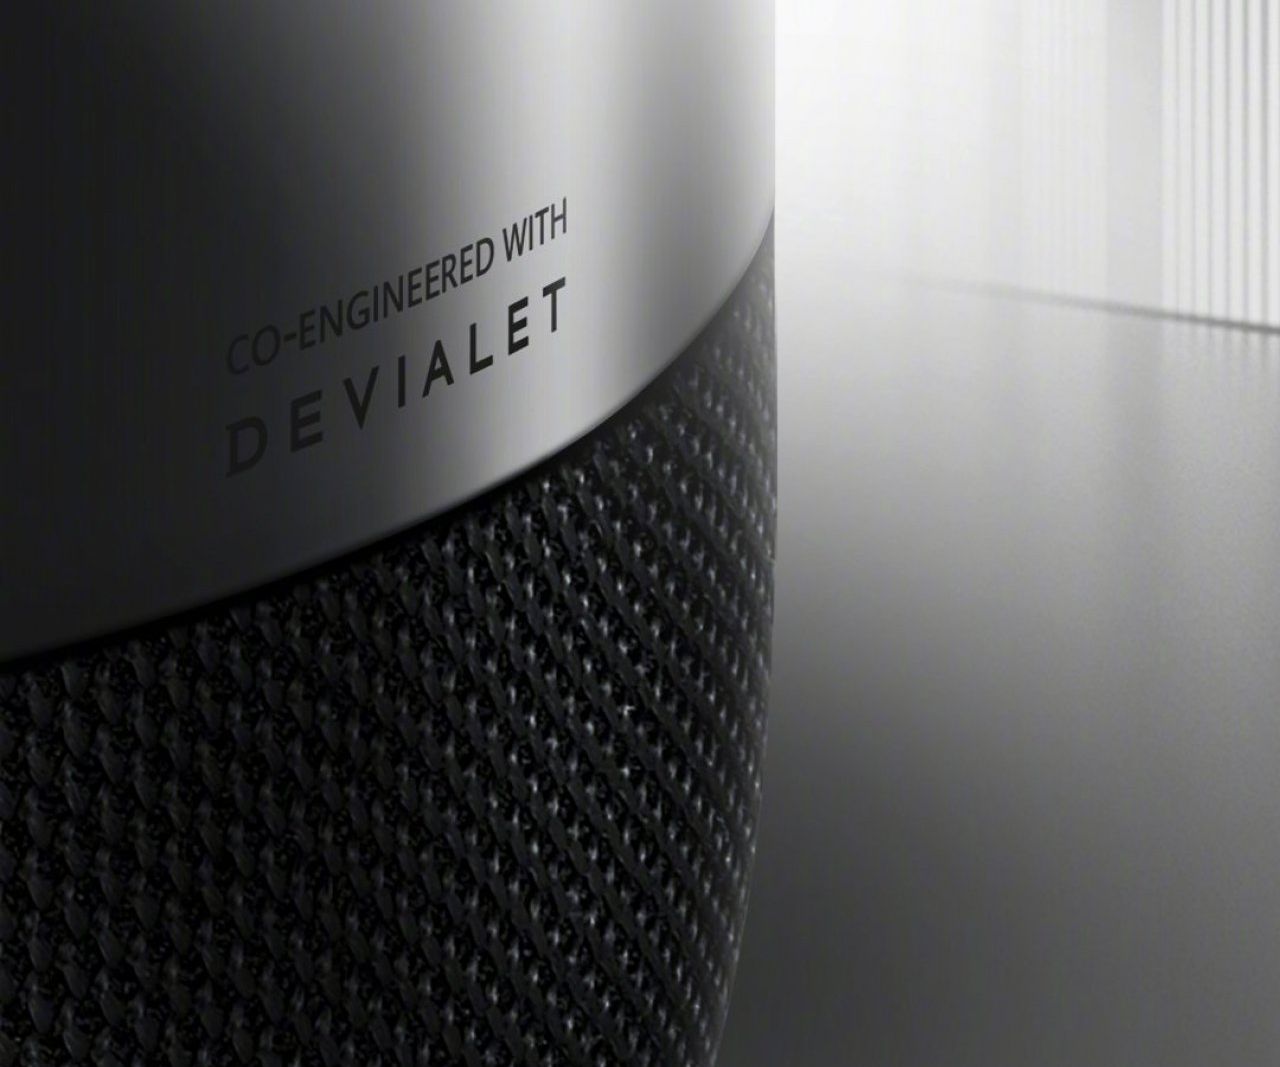 Devialet iş birliğiyle tasarlanan Huawei Sound X'in tanıtım tarihi açıklandı